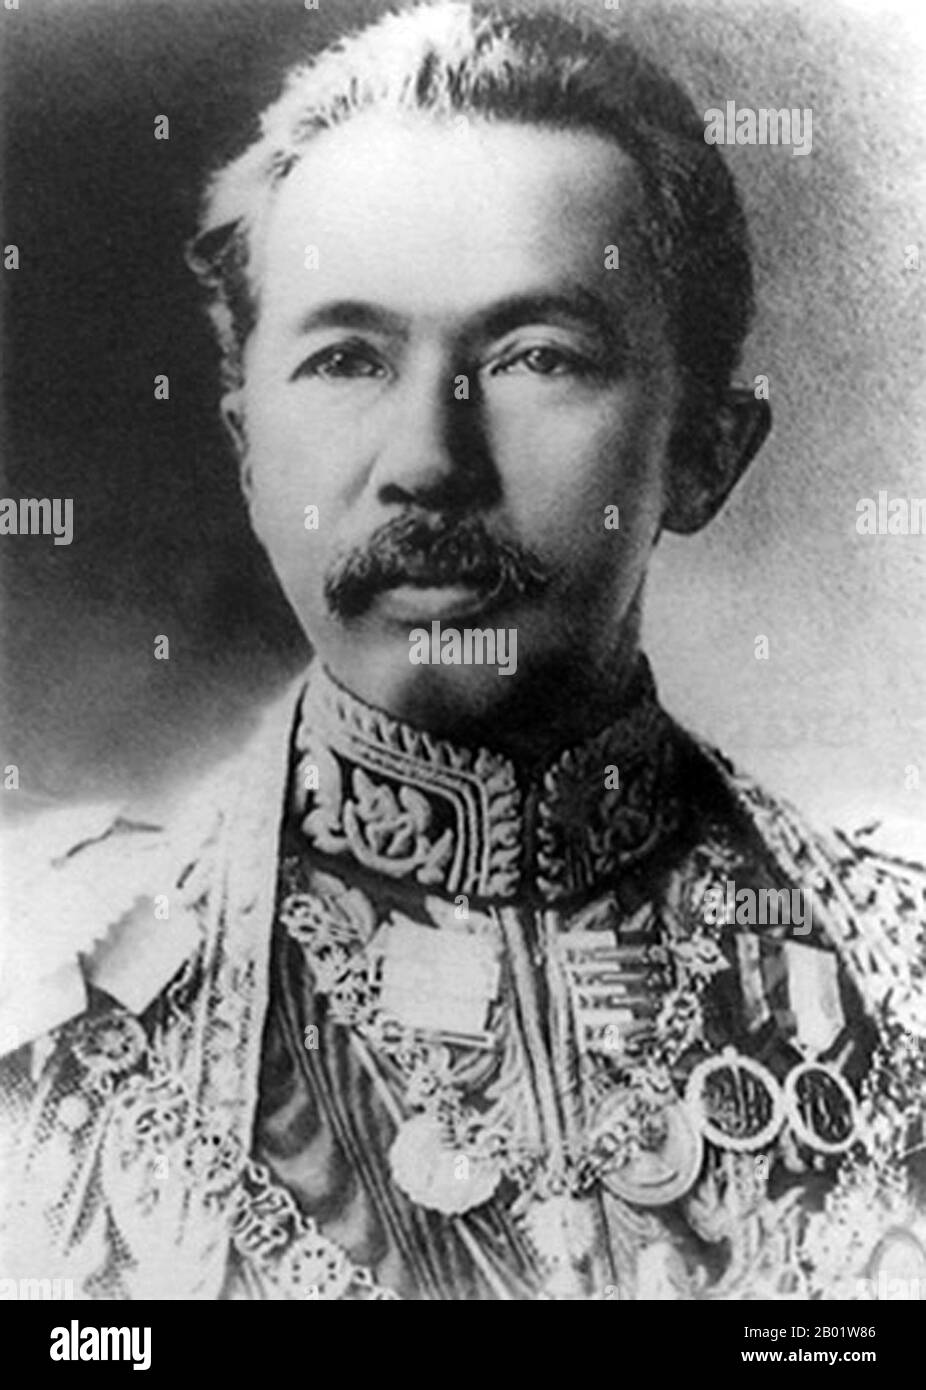 Thailand: Prinz Ditsawarakuman (21. Juni 1762 bis 1. Dezember 1943), besser bekannt als Prinz Damrong Rajanubhab, Innenminister und Halbbruder von König Chulalongkorn (Rama V.). Porträt, ca. 1890er Jahre Ditsawarakuman Damrong Rajanubhab (Somdet Phra Chao Borommawong Thoe Phra Ong Chao Ditsawarakuman Krom Phraya Damrong Rachanuphap) war der Gründer des modernen thailändischen Bildungssystems und der modernen Provinzverwaltung. Er war auch Autodidakt und einer der einflussreichsten siamesischen Intellektuellen seiner Zeit. Stockfoto